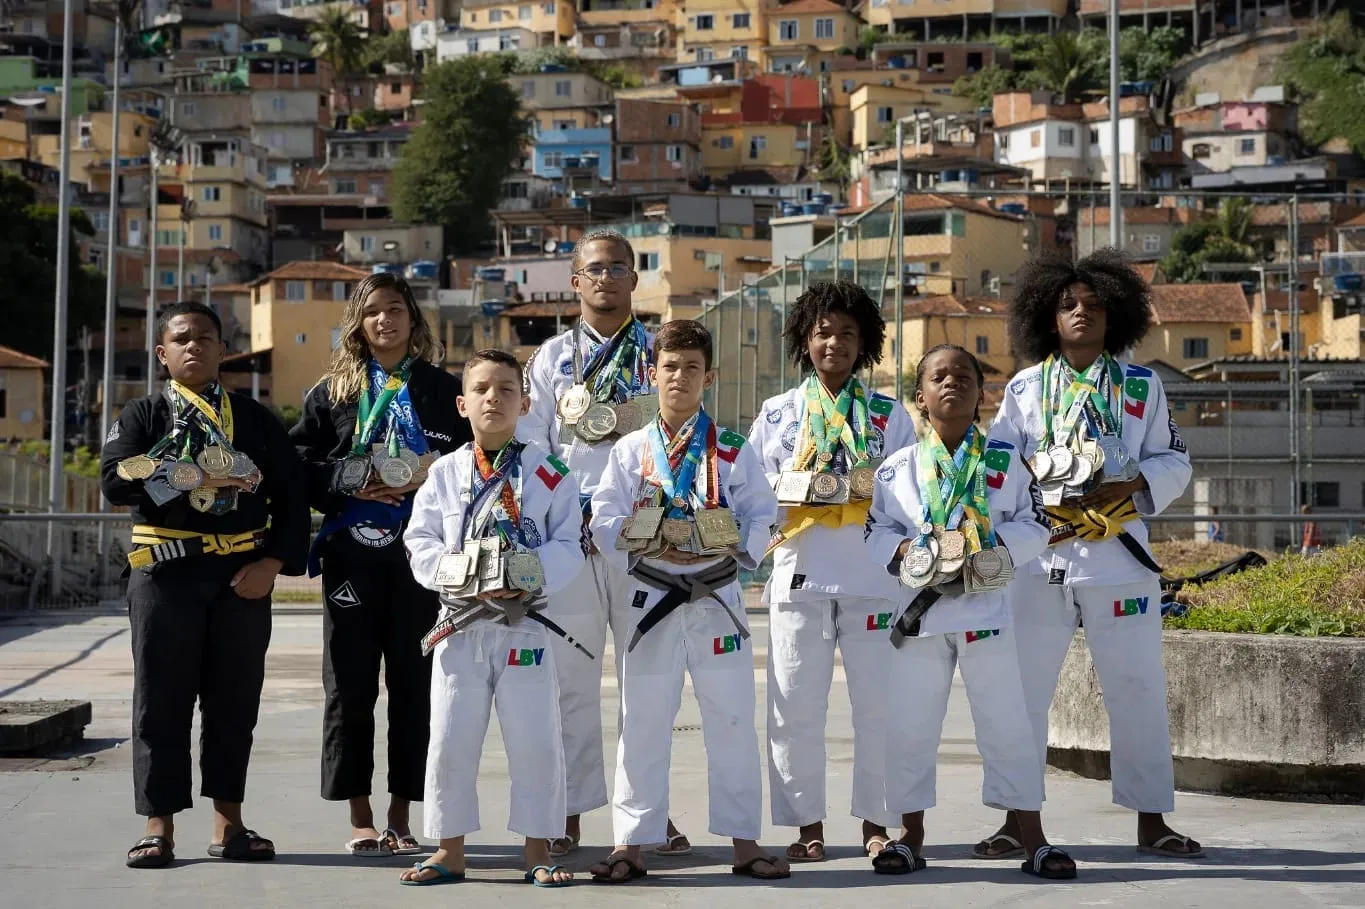 Sete dos atletas são da Comunidade da Providência; e um da Comunidade do Jacarezinho